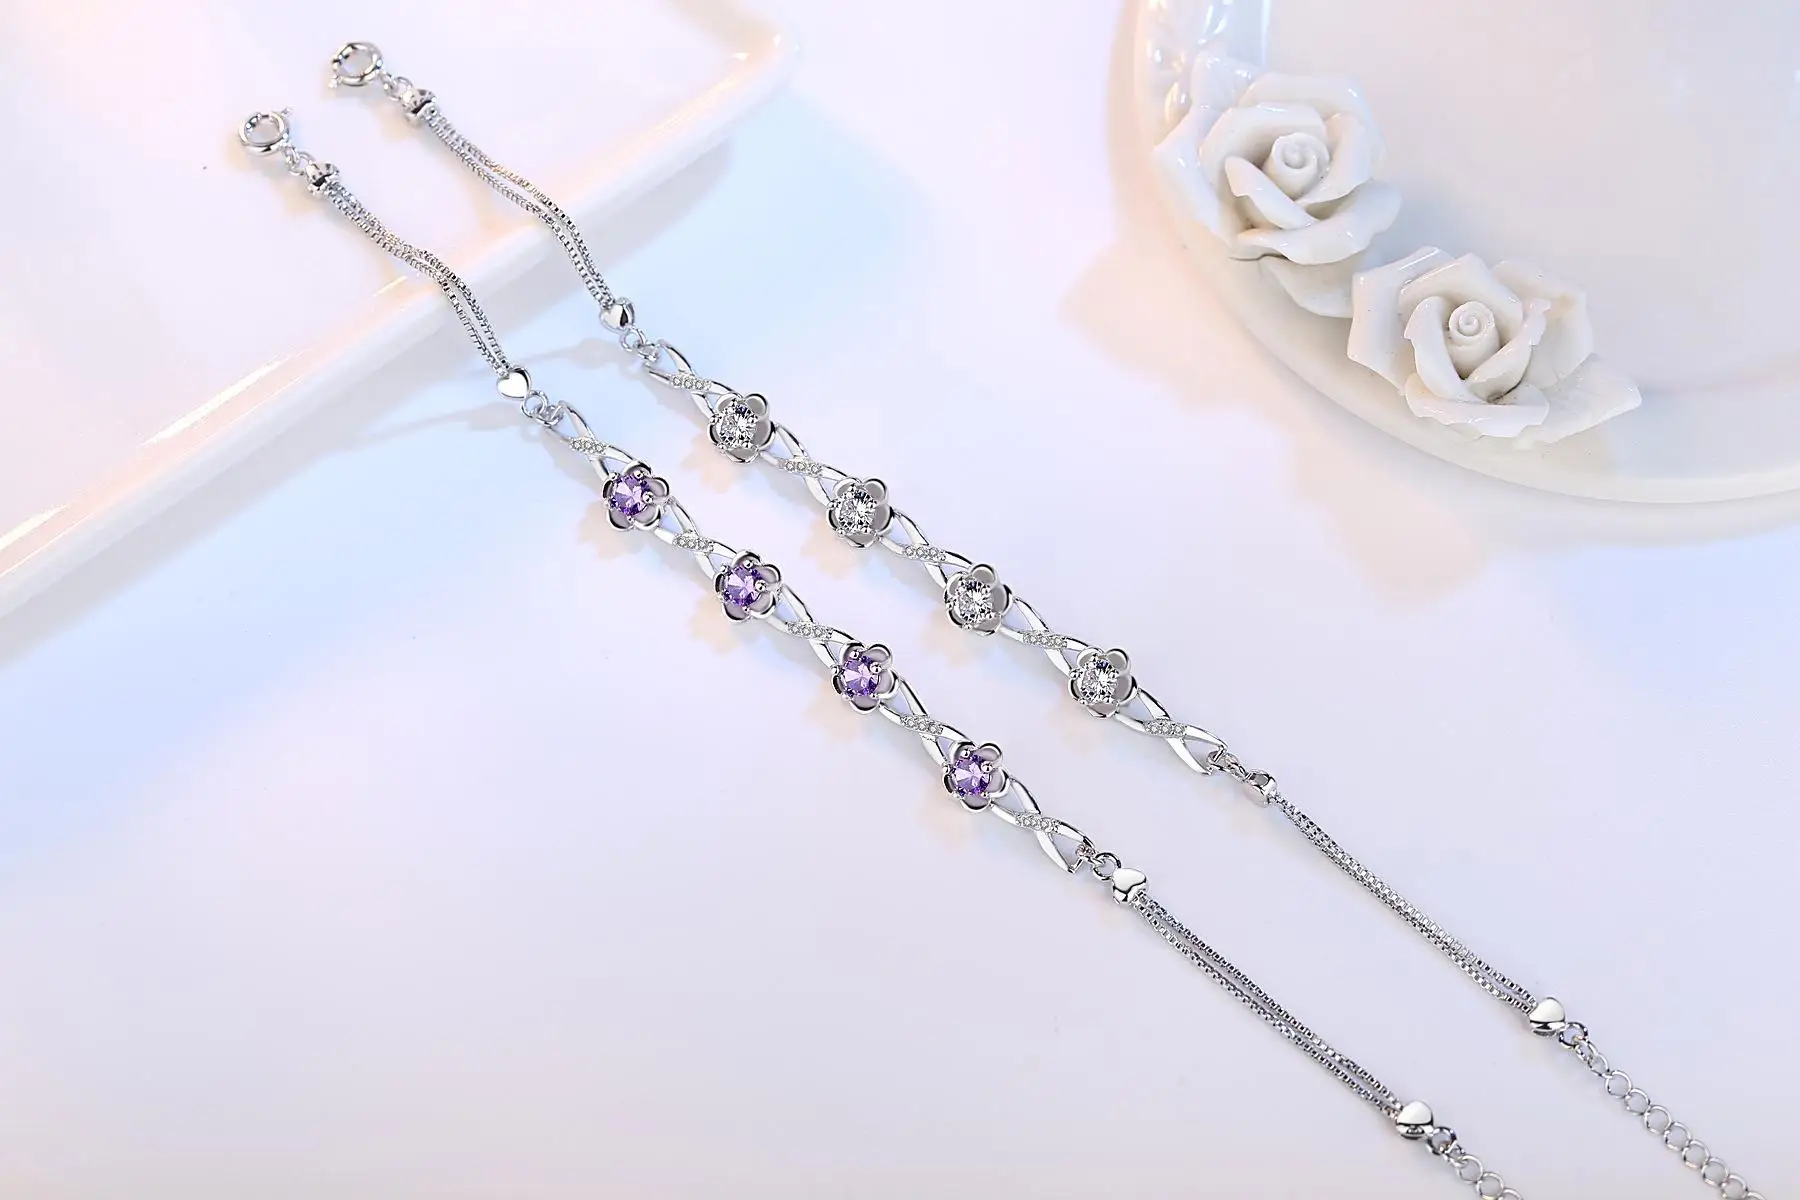 

S925 Sterling Silver Bracelet 2 Carats Diamond for Women Silver Jewelry Bijoux Bracelet pulseras de plata ley 925 mujerBizuteria